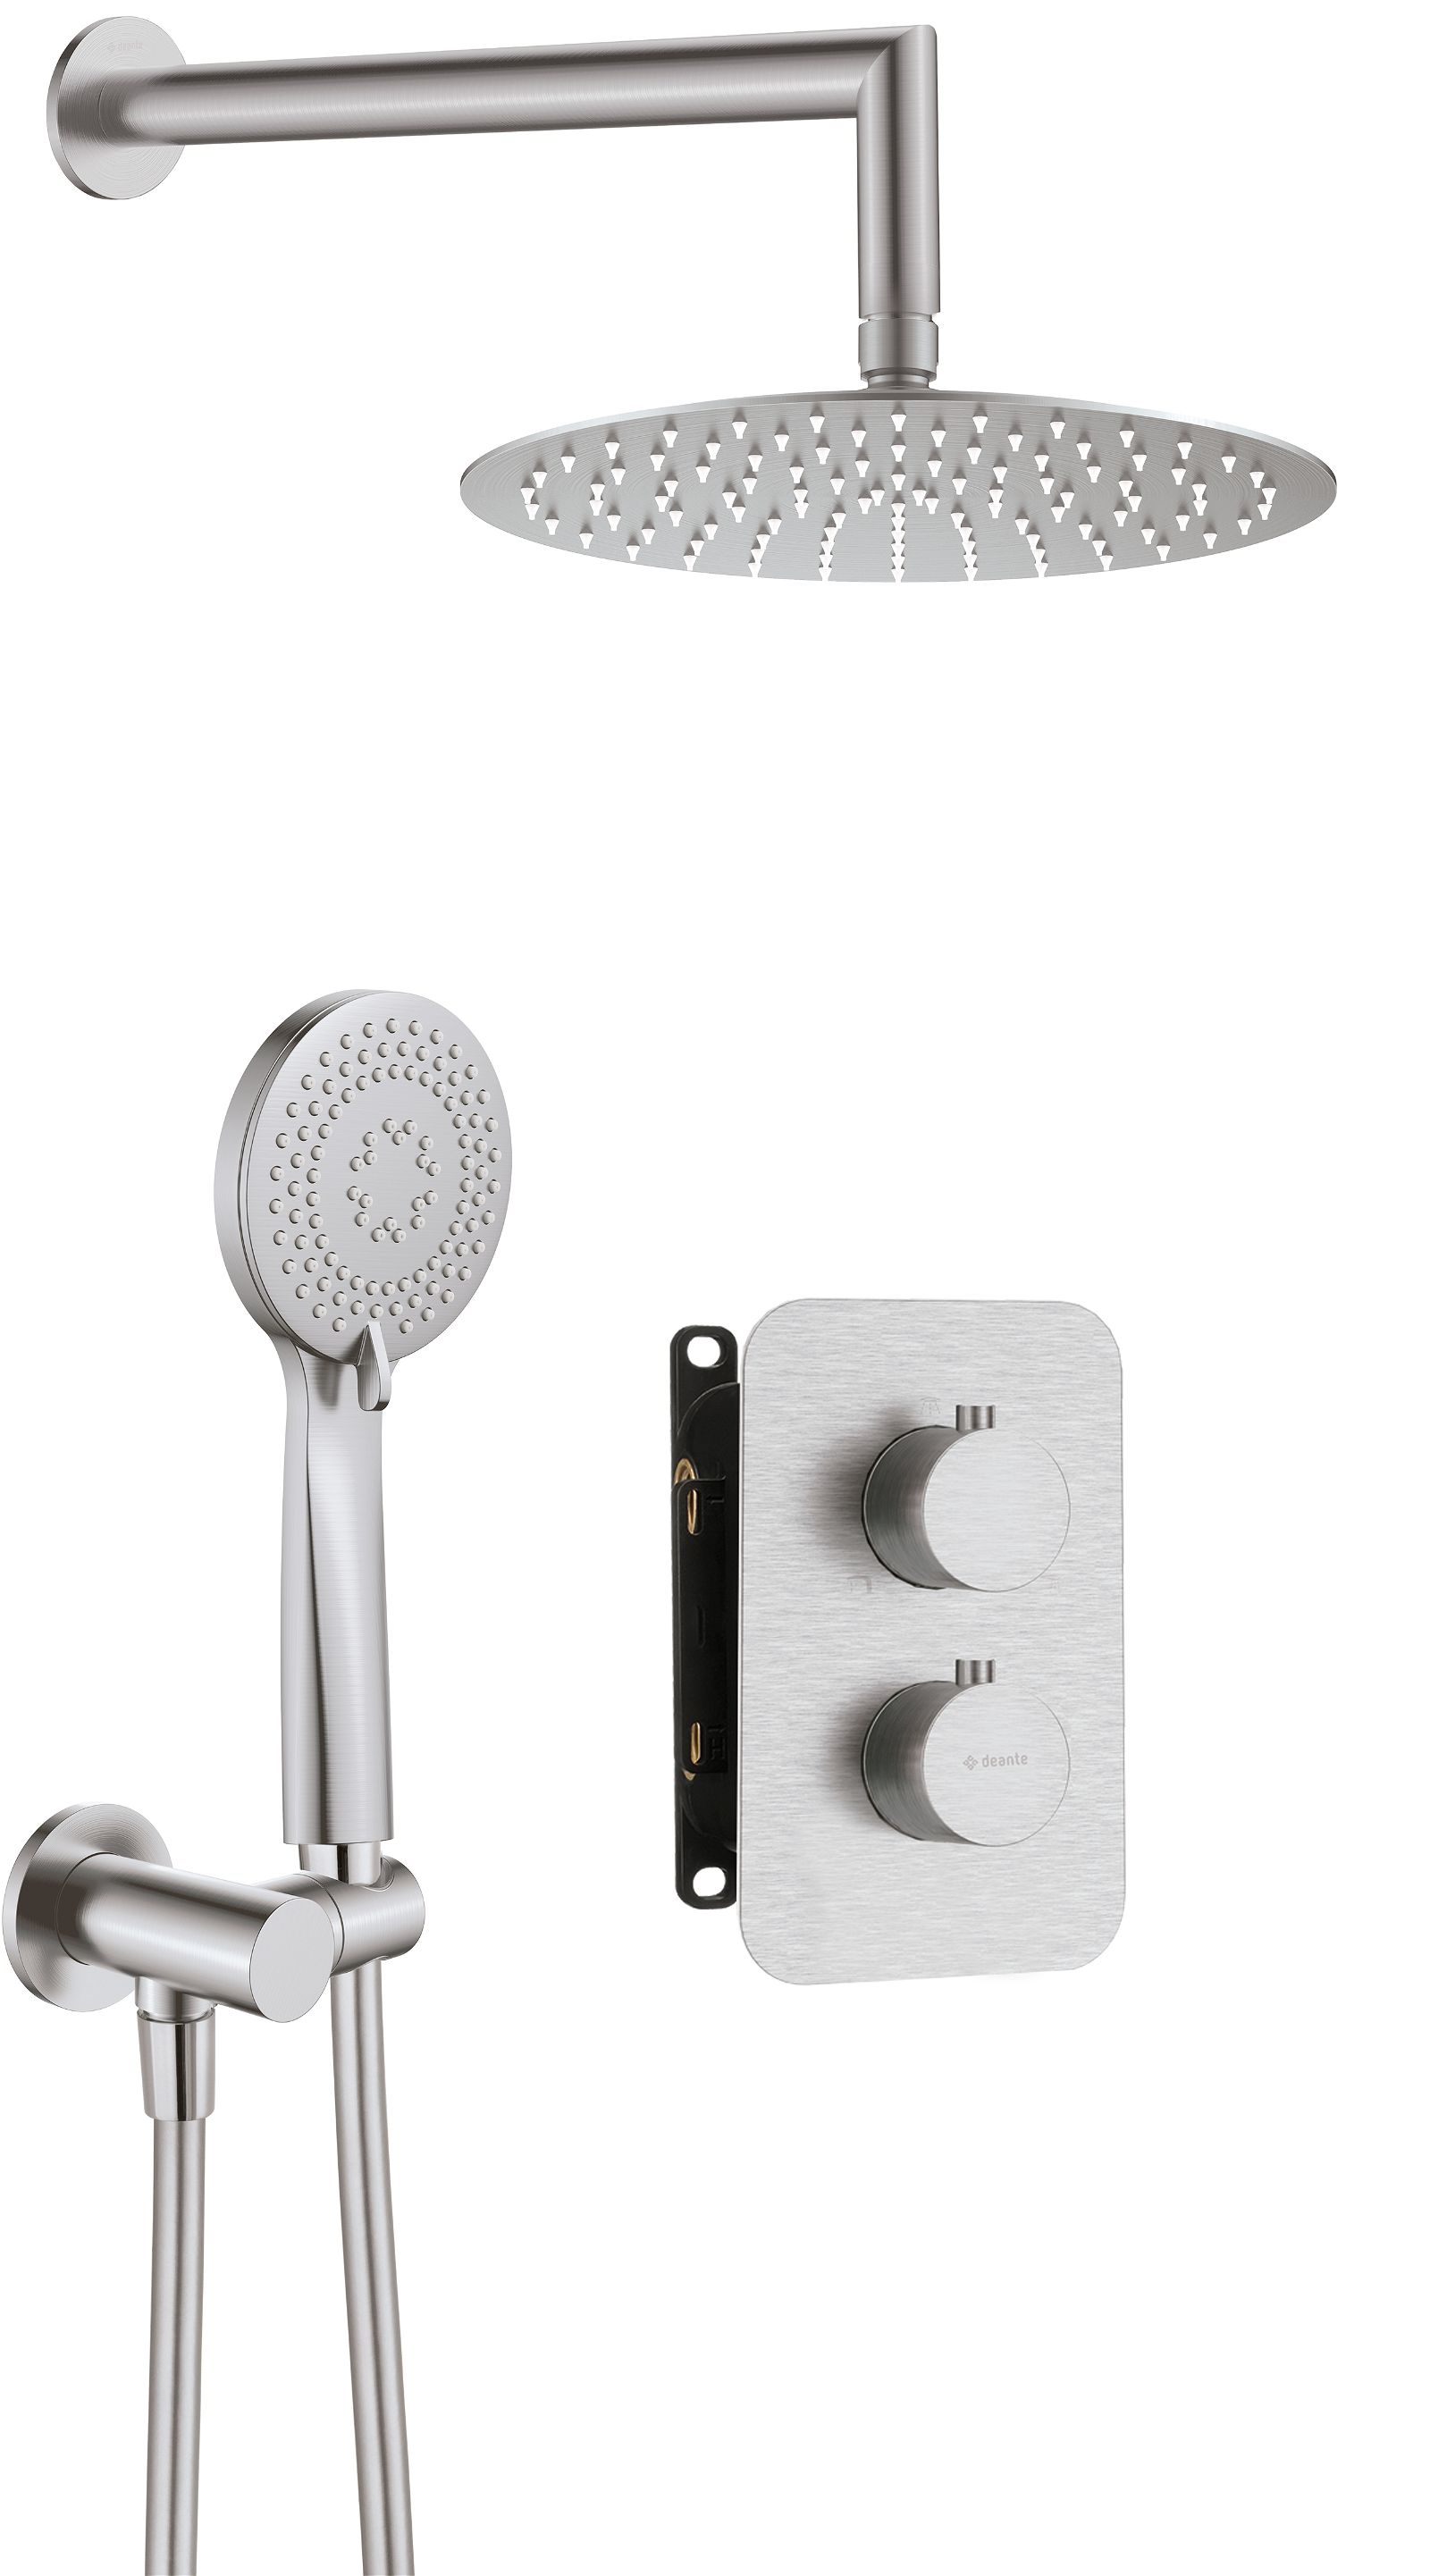 Zestaw prysznicowy podtynkowy z BOXem termostatycznym - BXYZFEBT - Główne zdjęcie produktowe